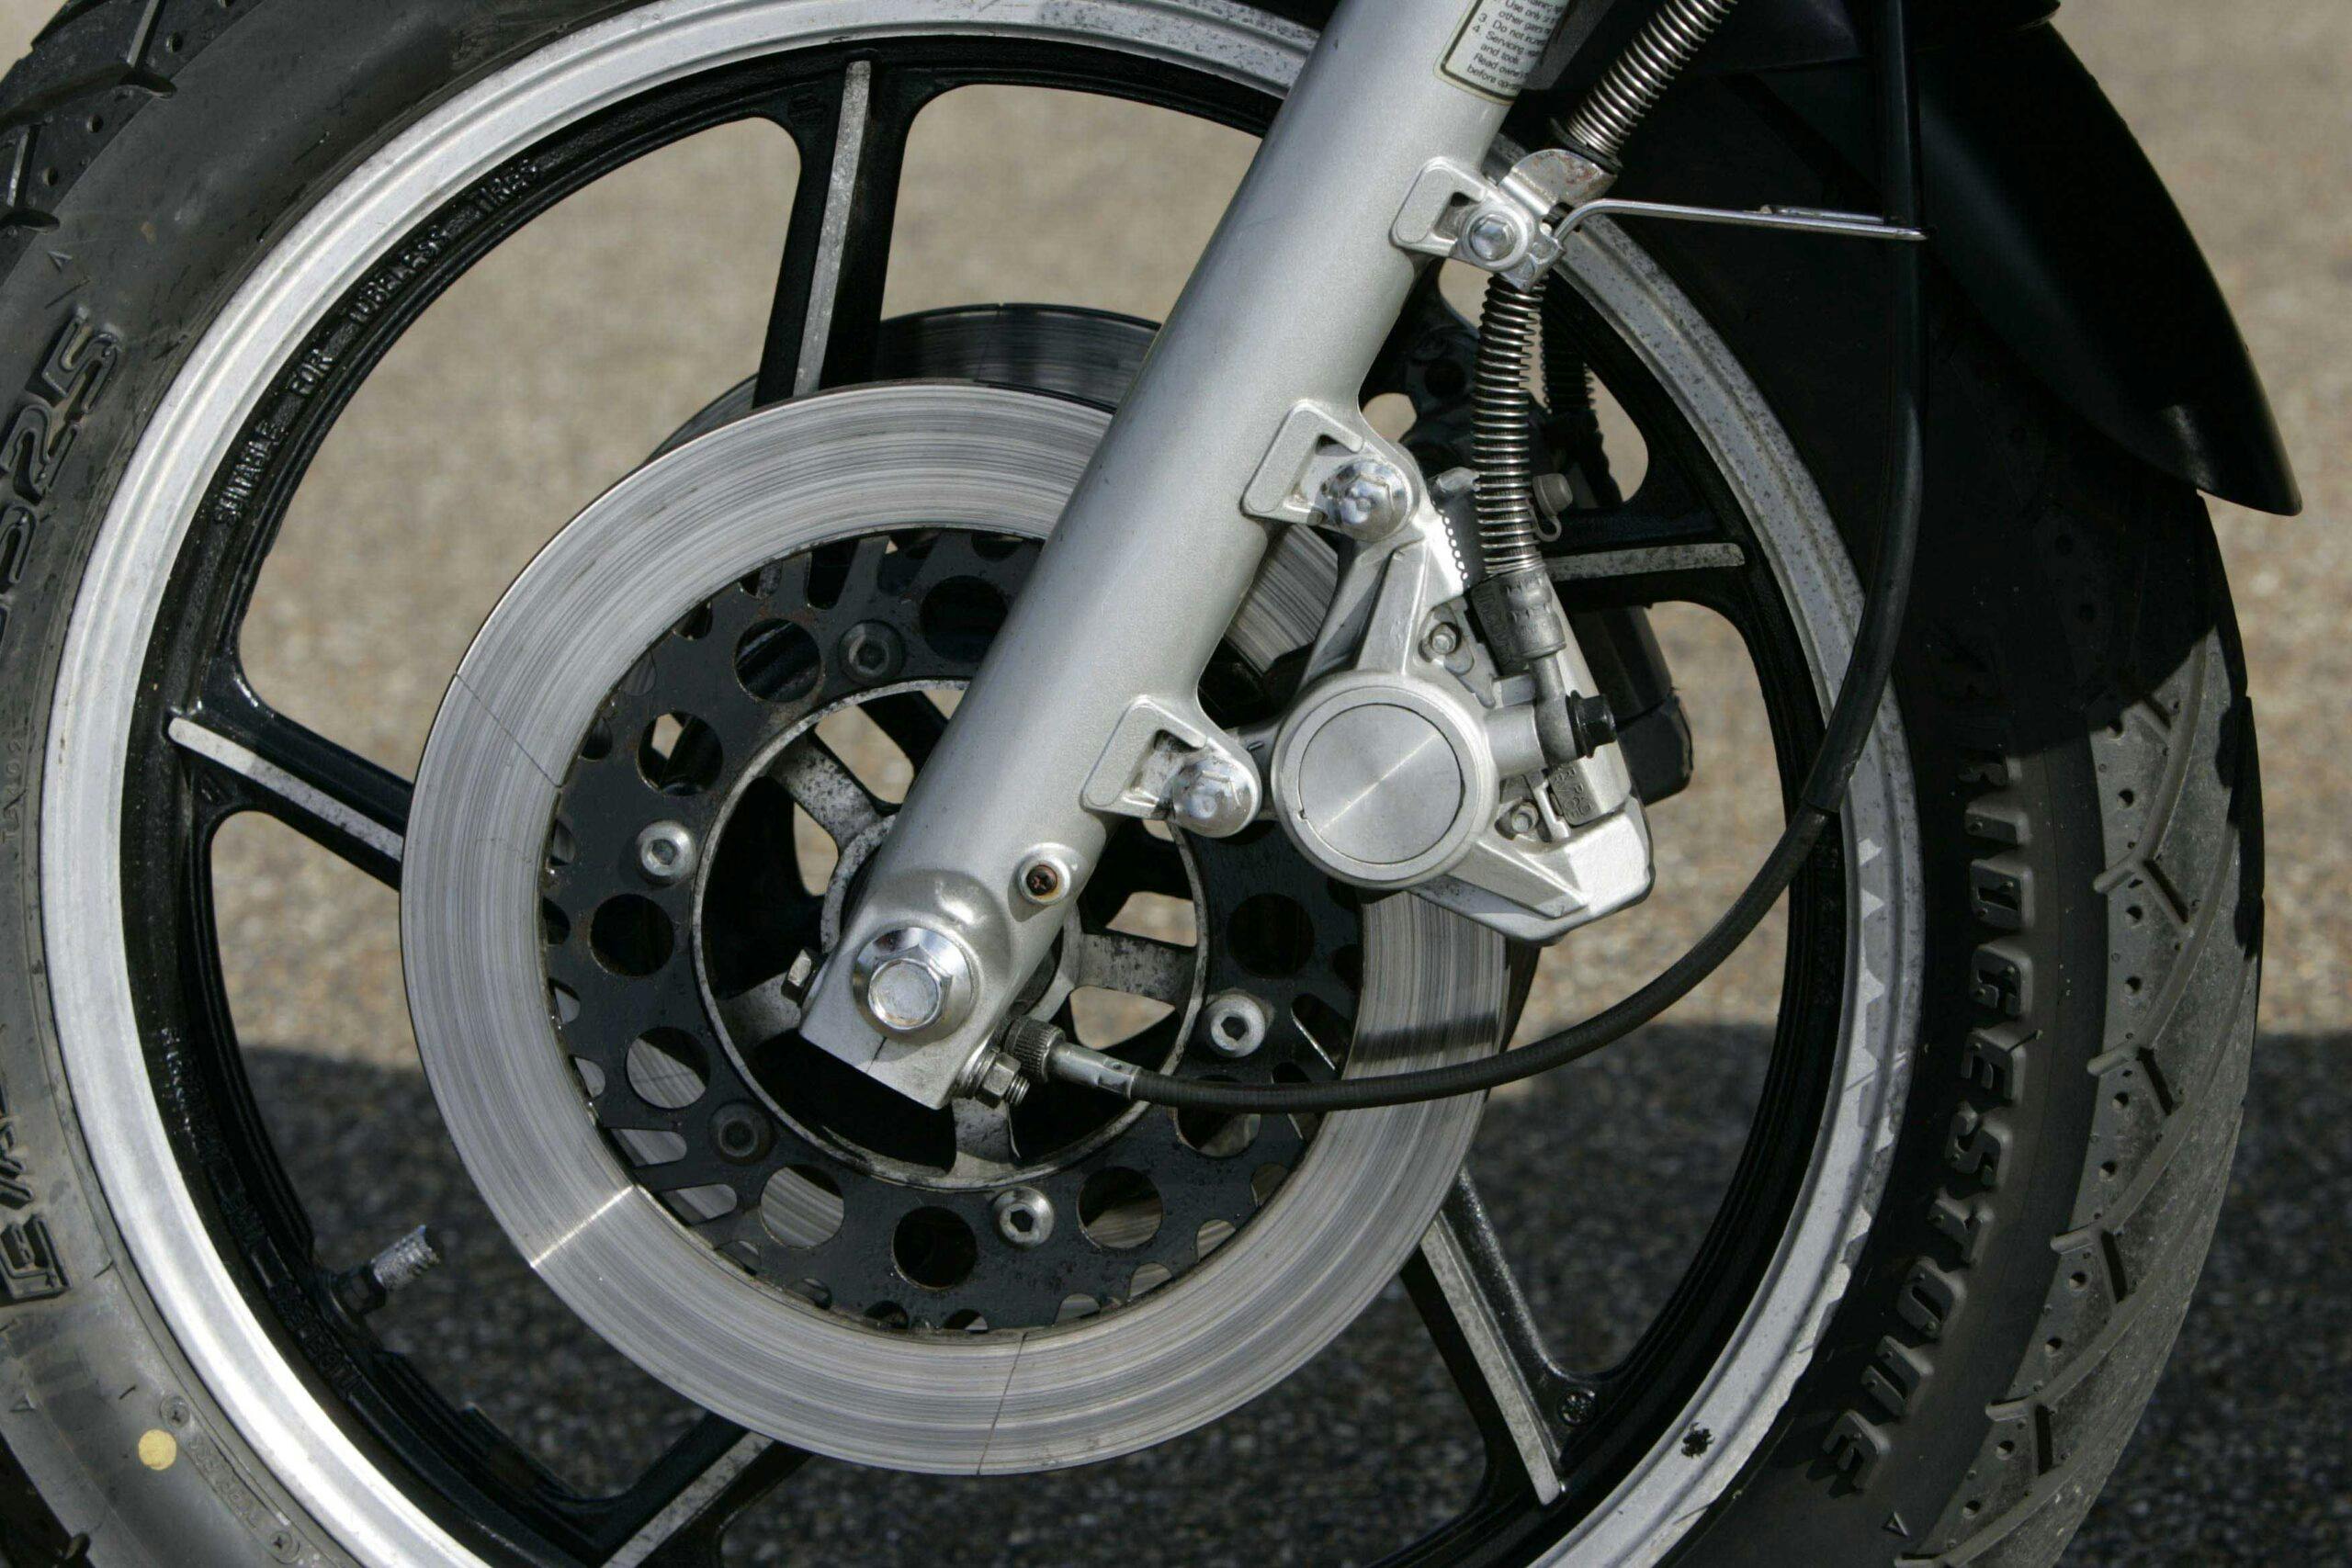 Yamaha V-Max front wheel